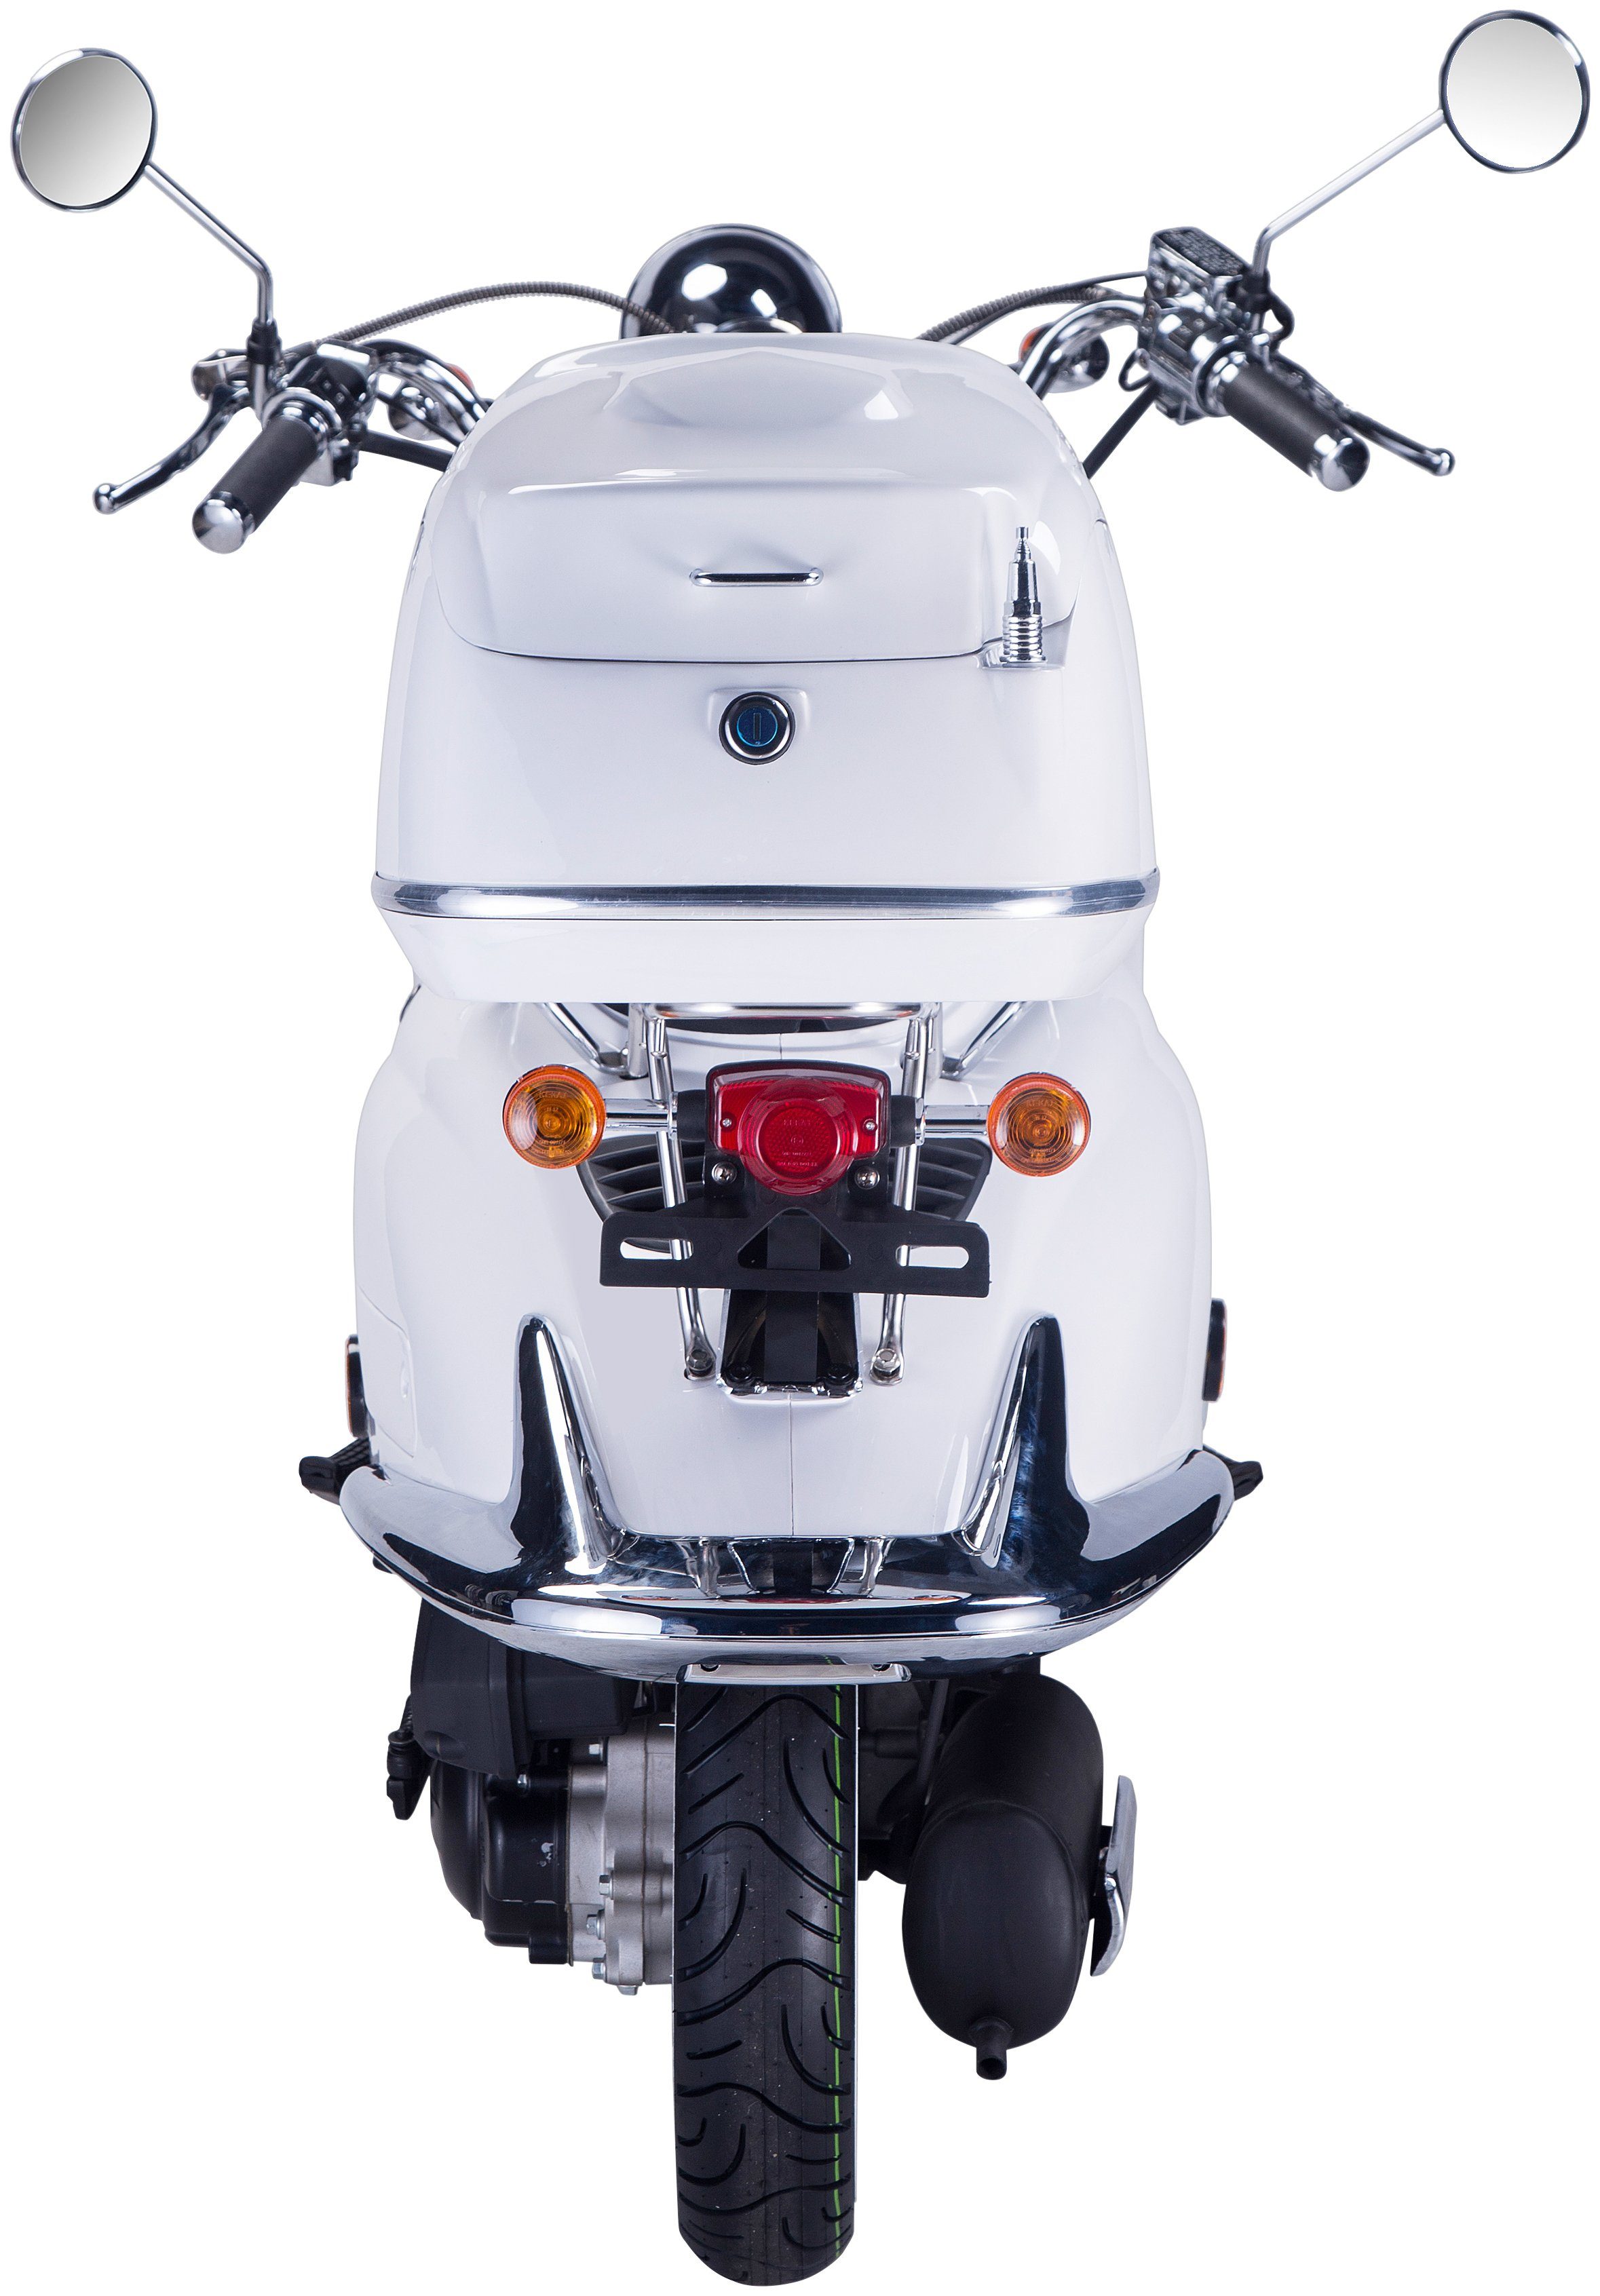 GT UNION Motorroller mit Strada, 5, (Set), weiß ccm, Topcase km/h, 125 85 Euro